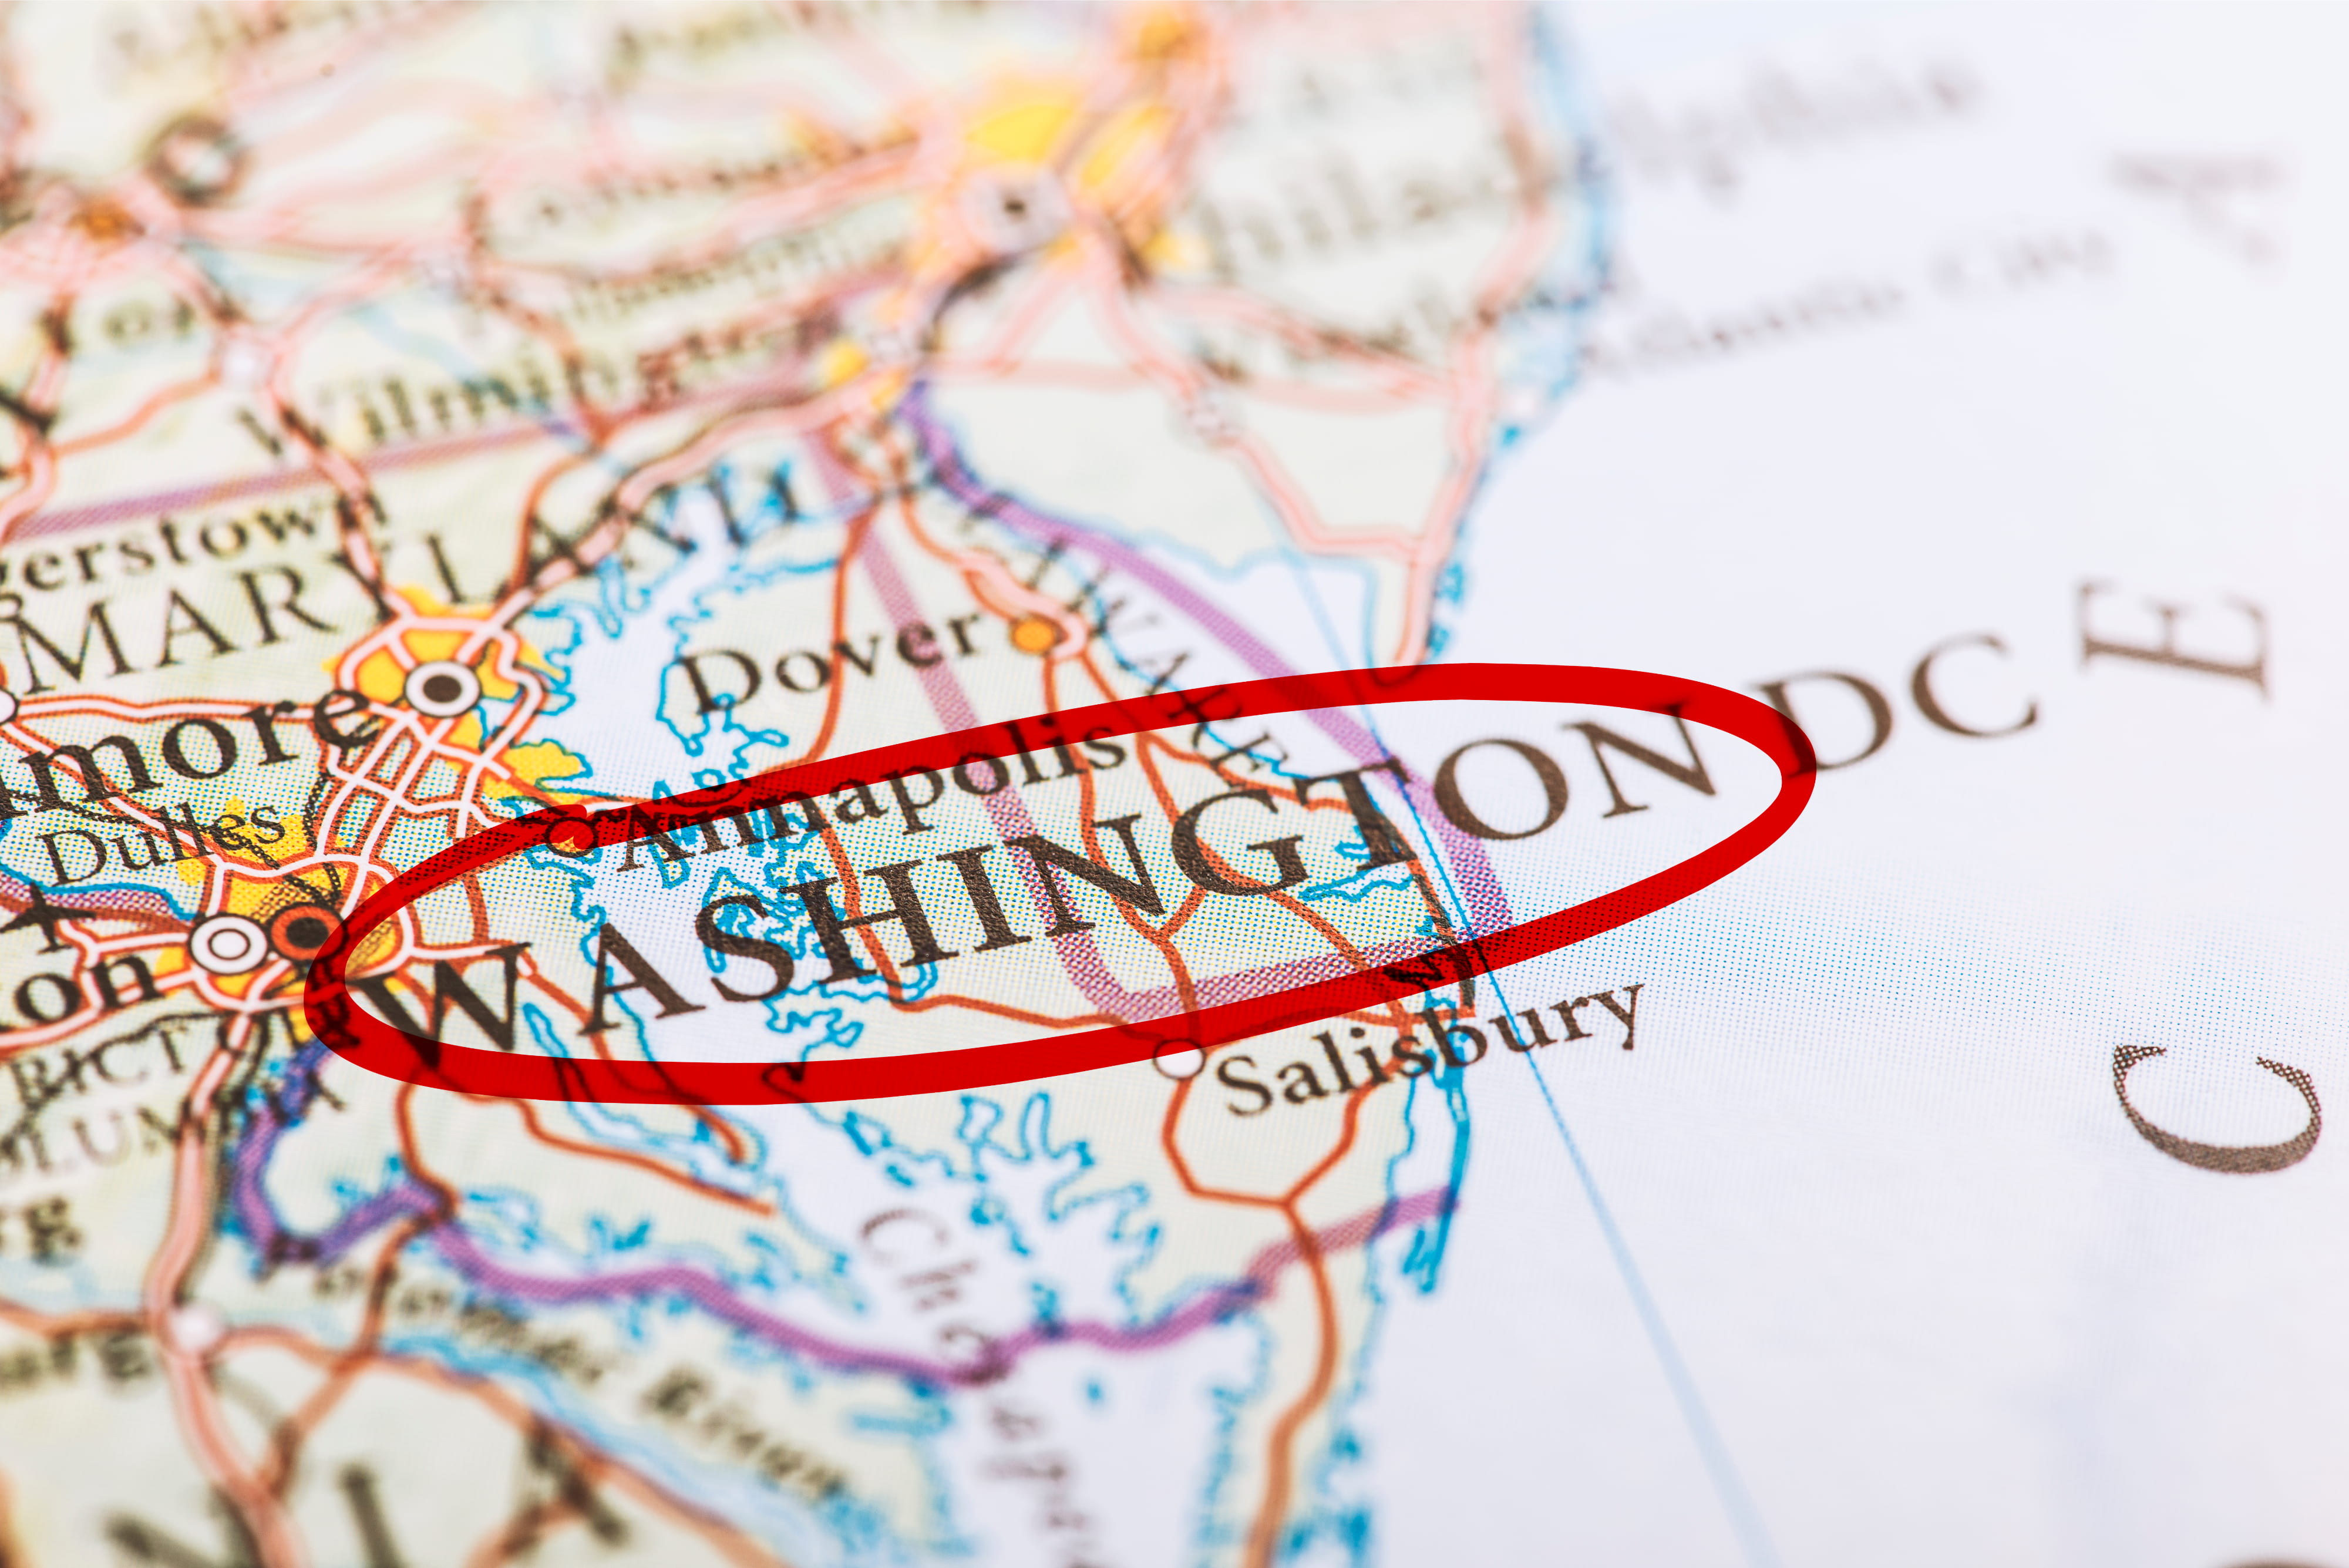 Washington DC city marked on map